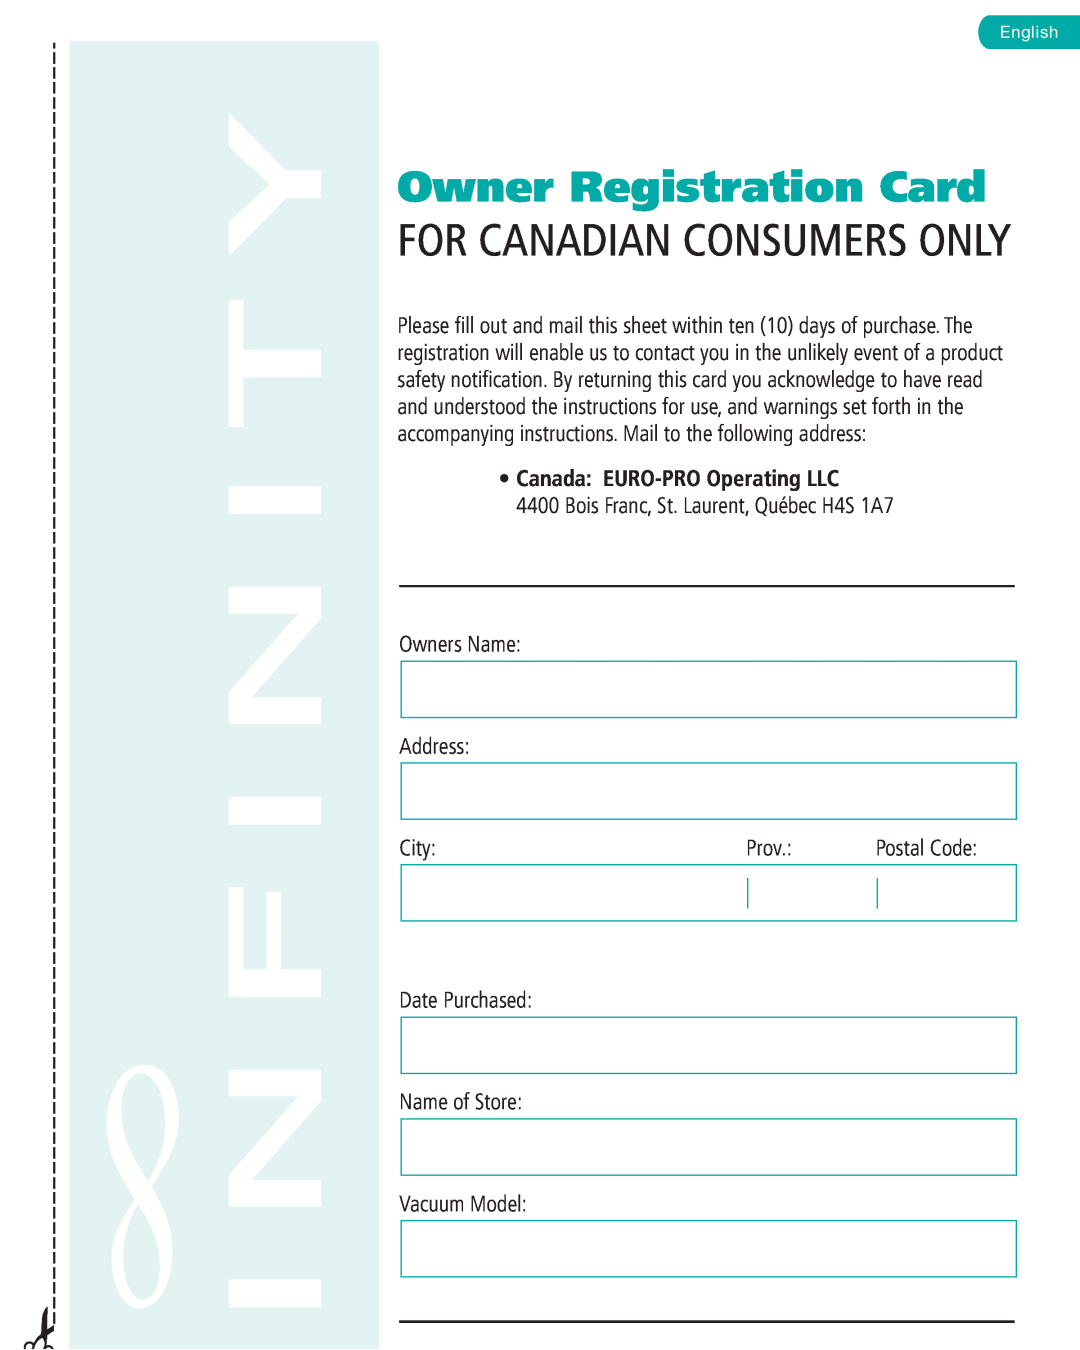 Infinity NV22C, NV22T Owner Registration Card, Bois Franc, St. Laurent, Québec H4S 1A7, Owners Name Address, City, Prov 